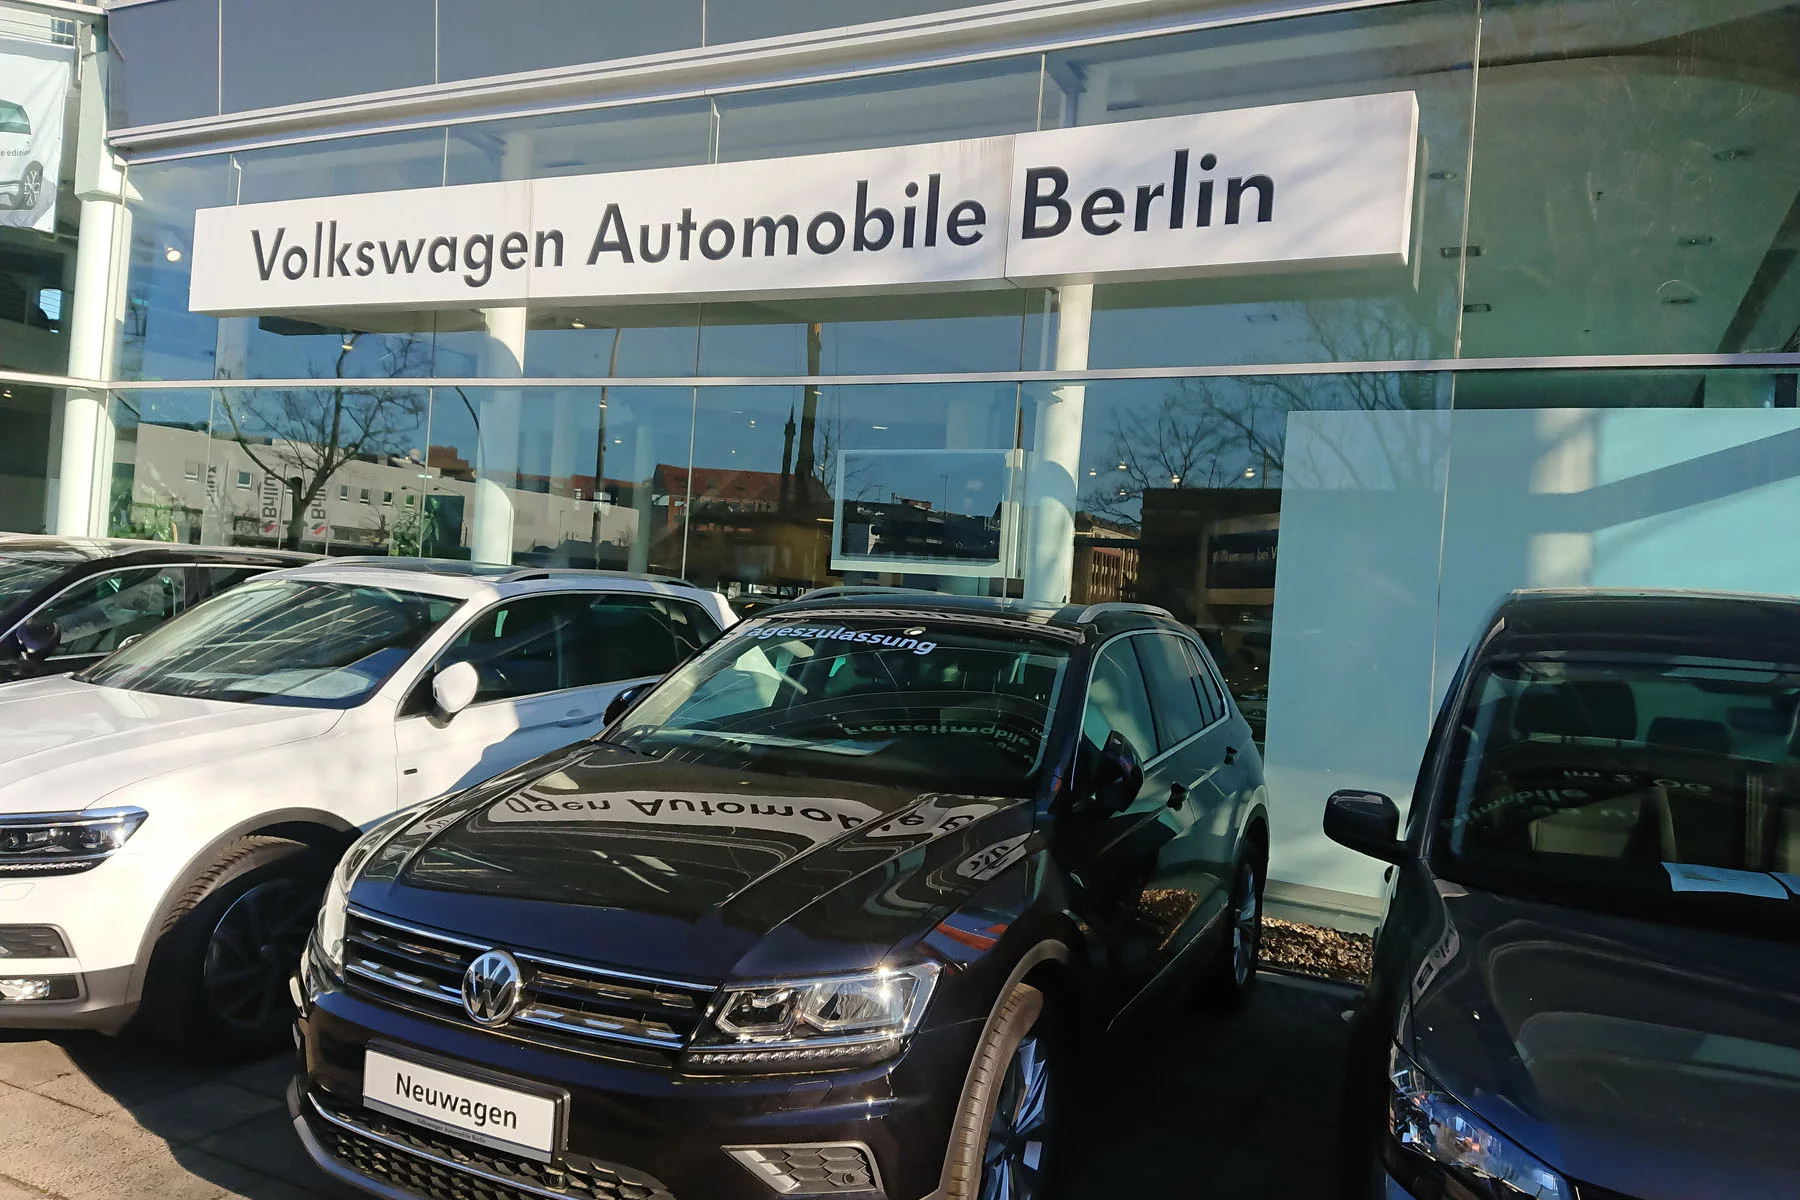 Volkswagen car dealership in Berlin